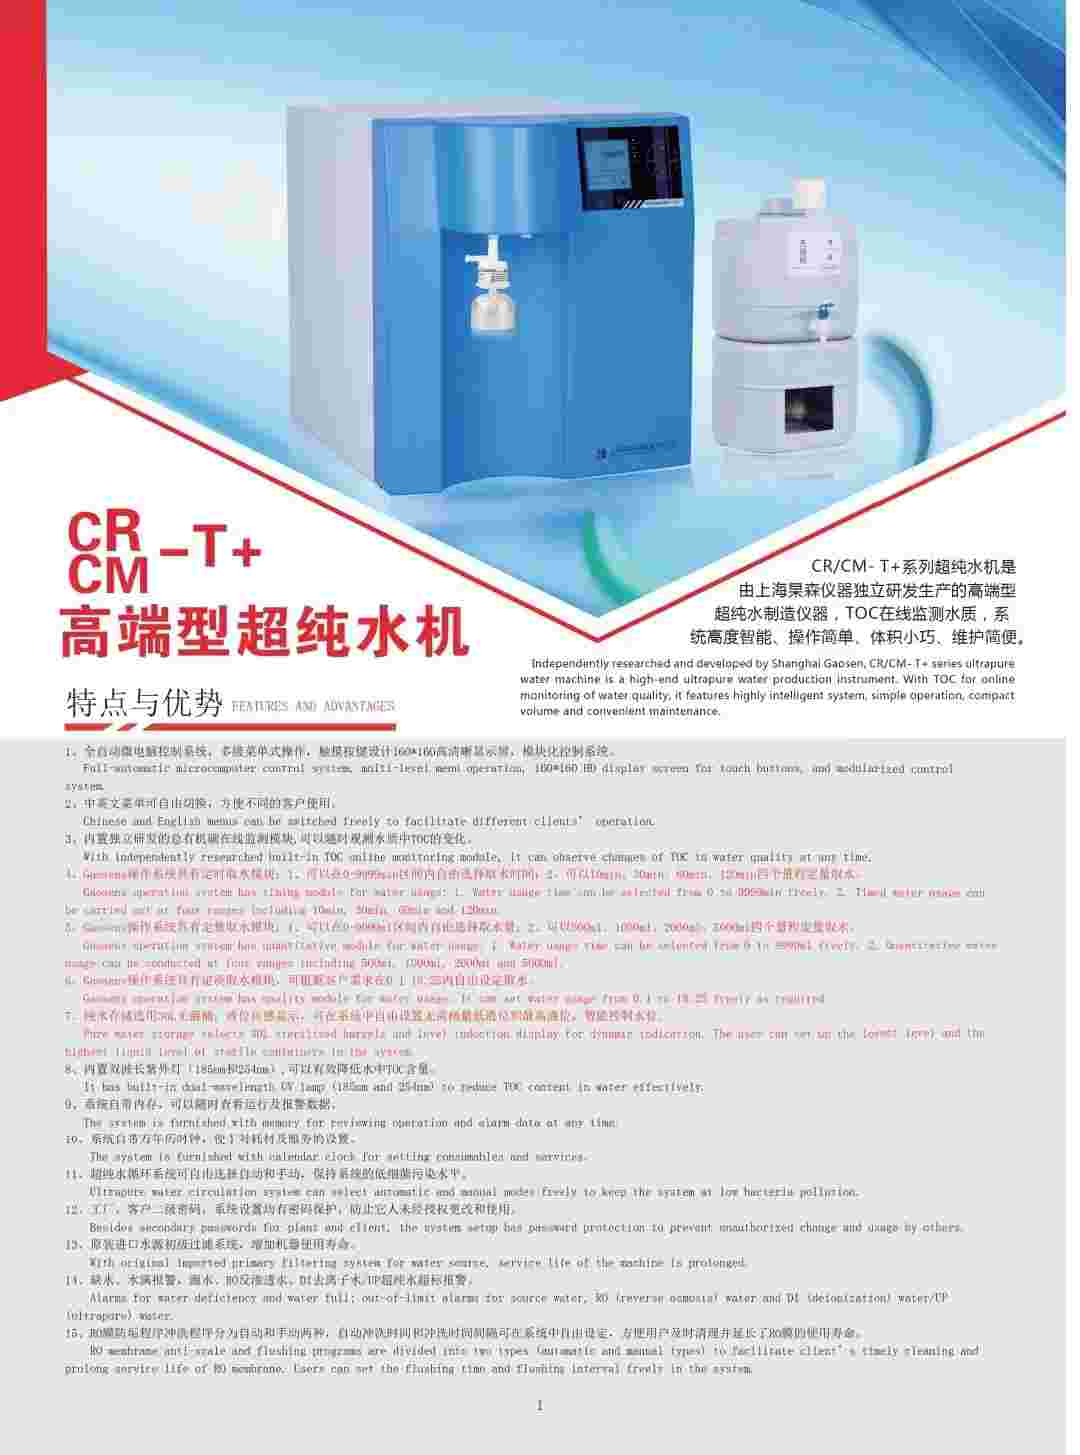 上海杲森CR高端系列超纯水机科研实验室超纯水制备